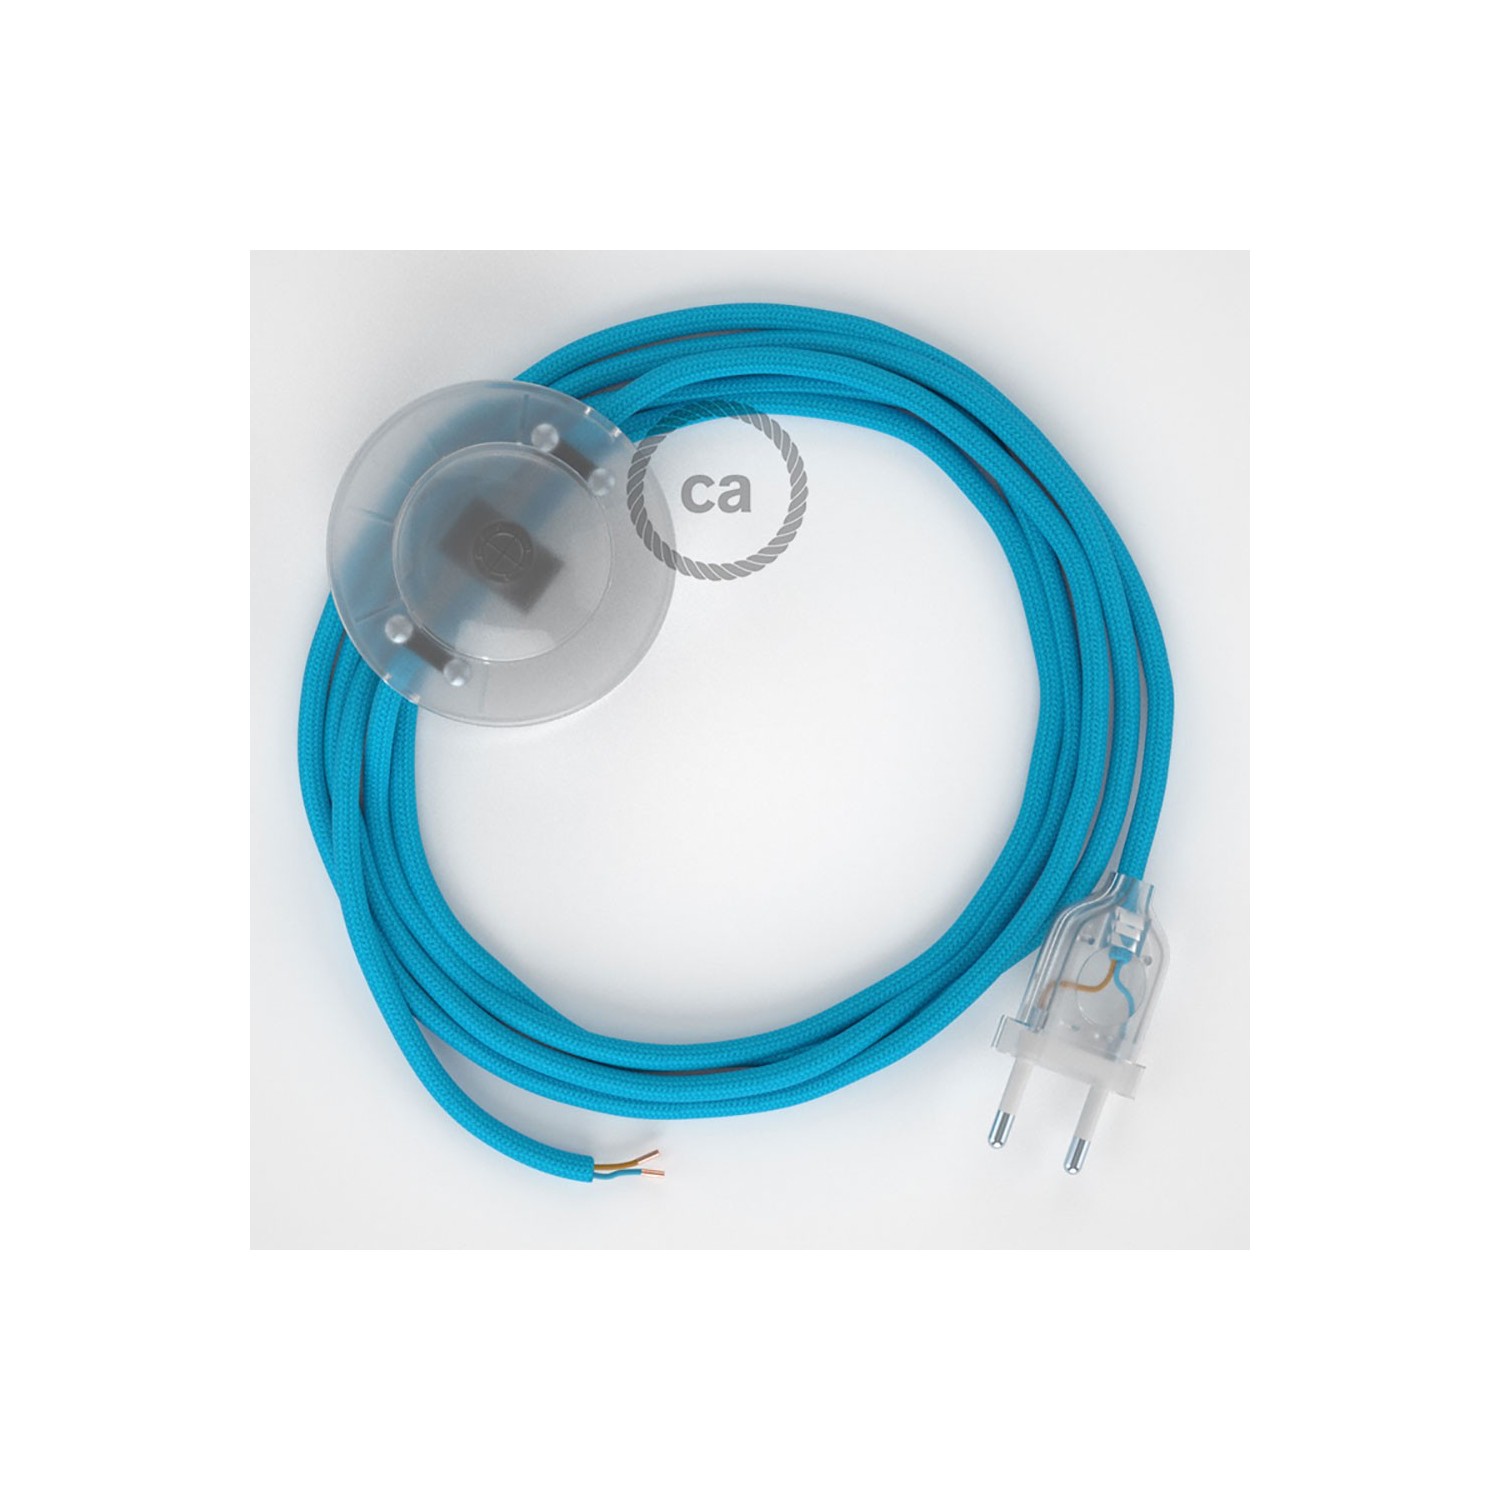 Cableado para lámpara de pie, cable RM11 Efecto Seda Celeste 3 m. Elige tu el color de la clavija y del interruptor!